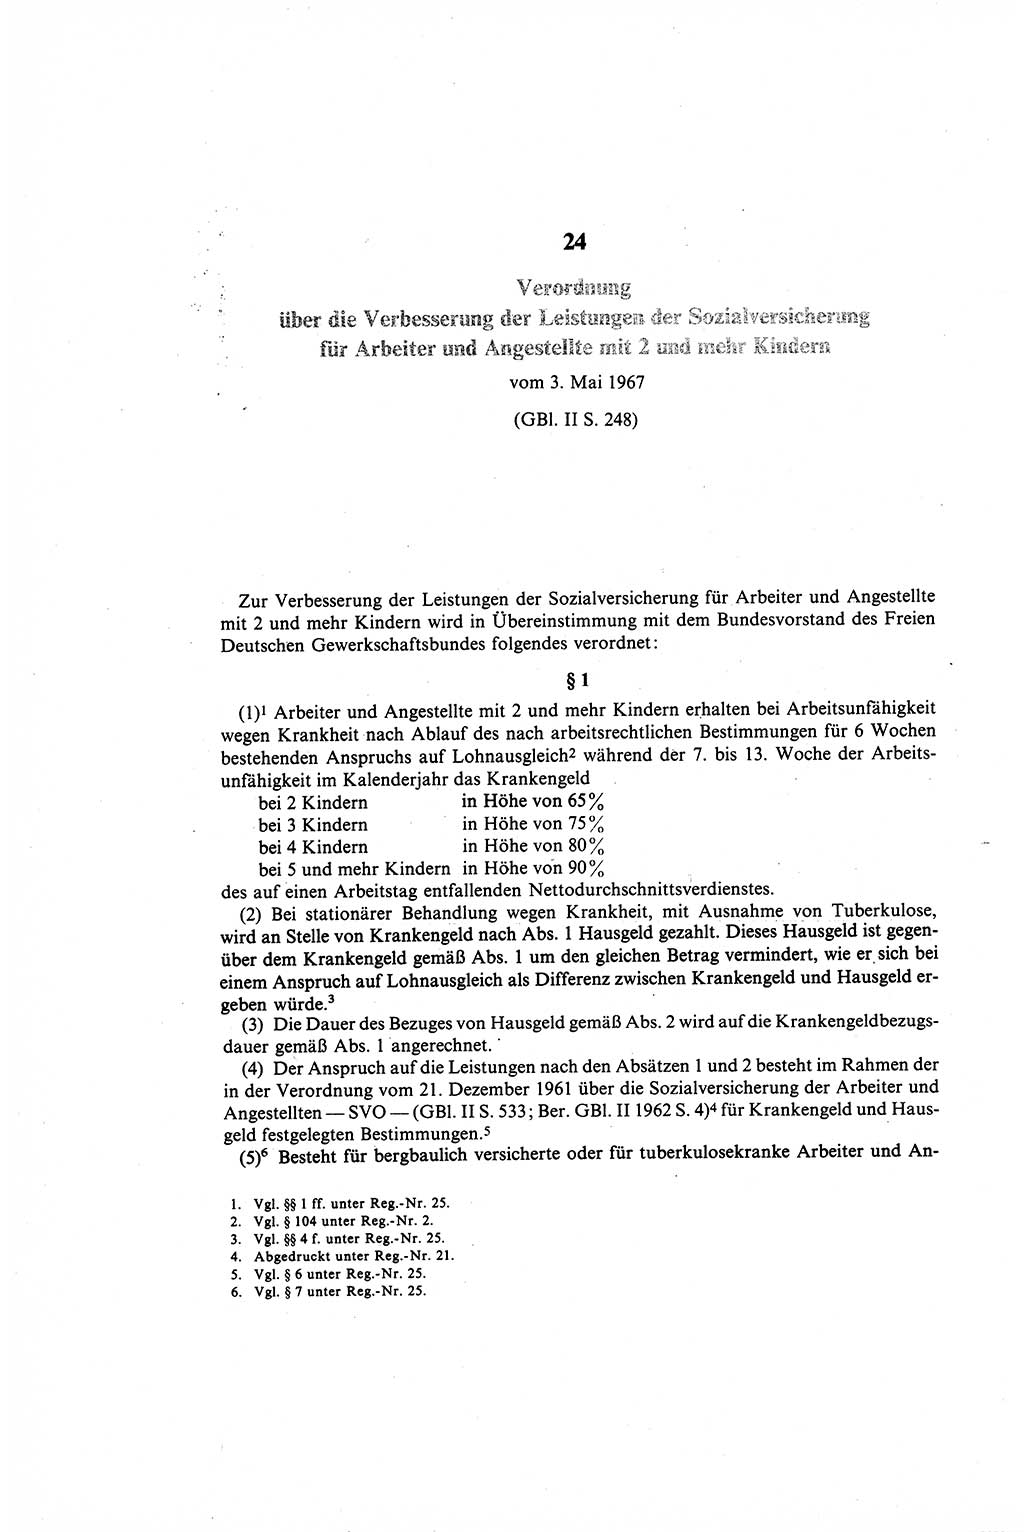 Gesetzbuch der Arbeit (GBA) und andere ausgewählte rechtliche Bestimmungen [Deutsche Demokratische Republik (DDR)] 1968, Seite 318 (GBA DDR 1968, S. 318)